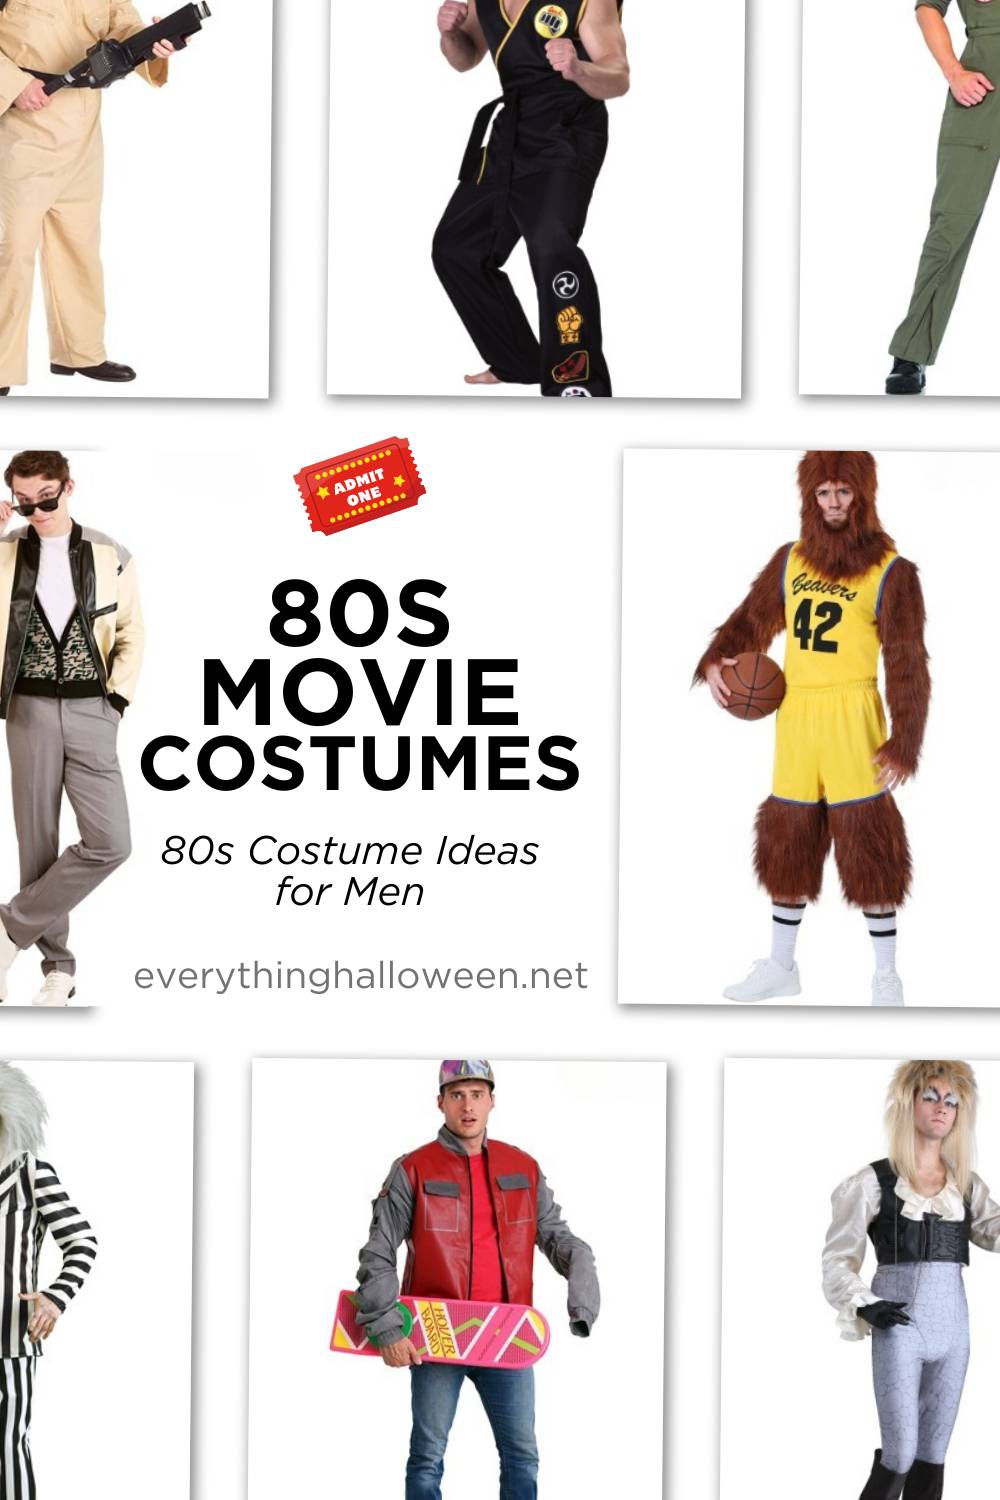 80s movie costume ideas for men